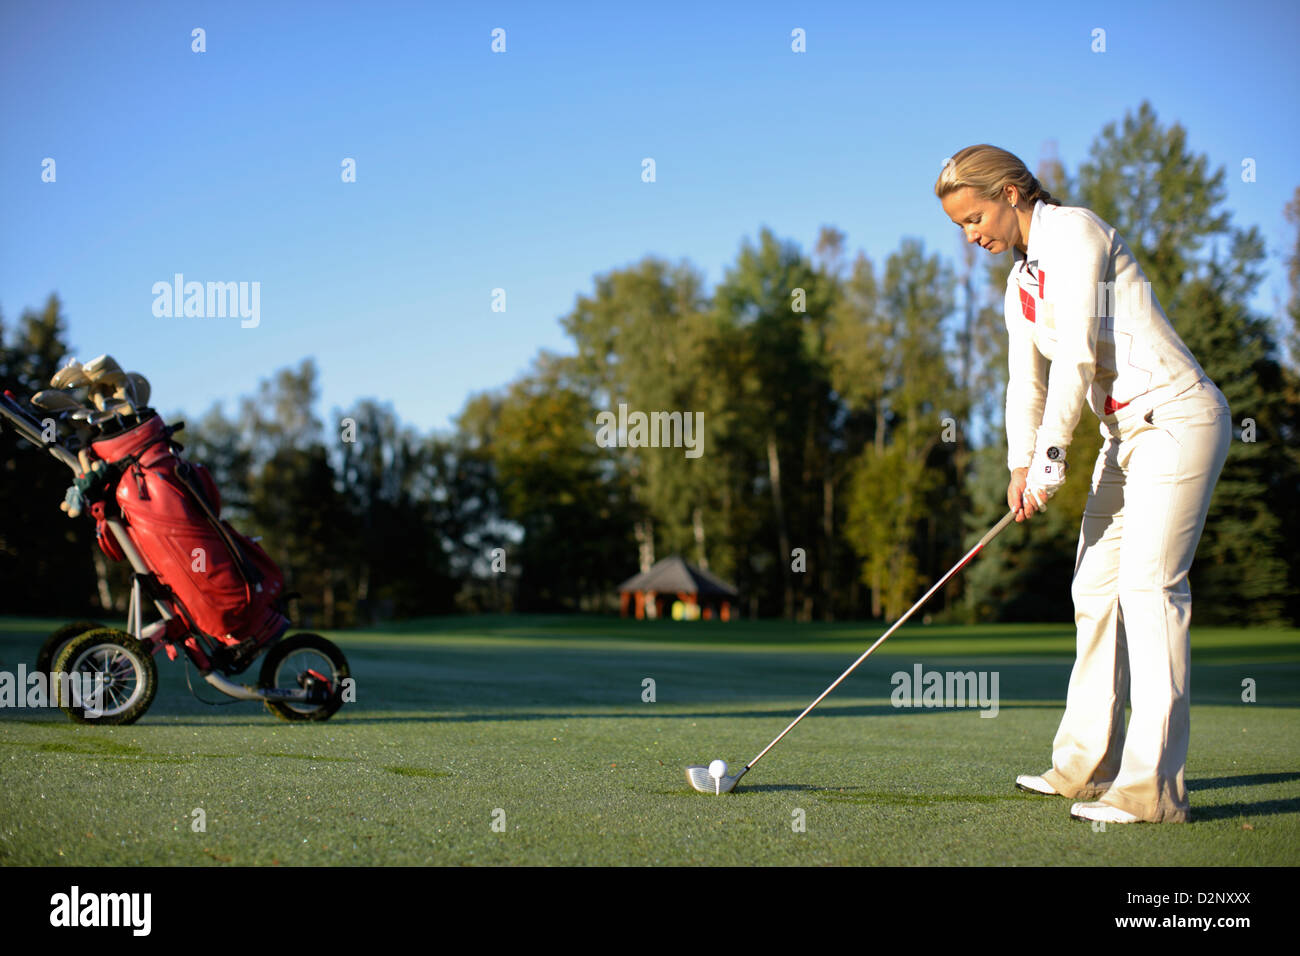 41 ans, jeune femme on golf course Banque D'Images